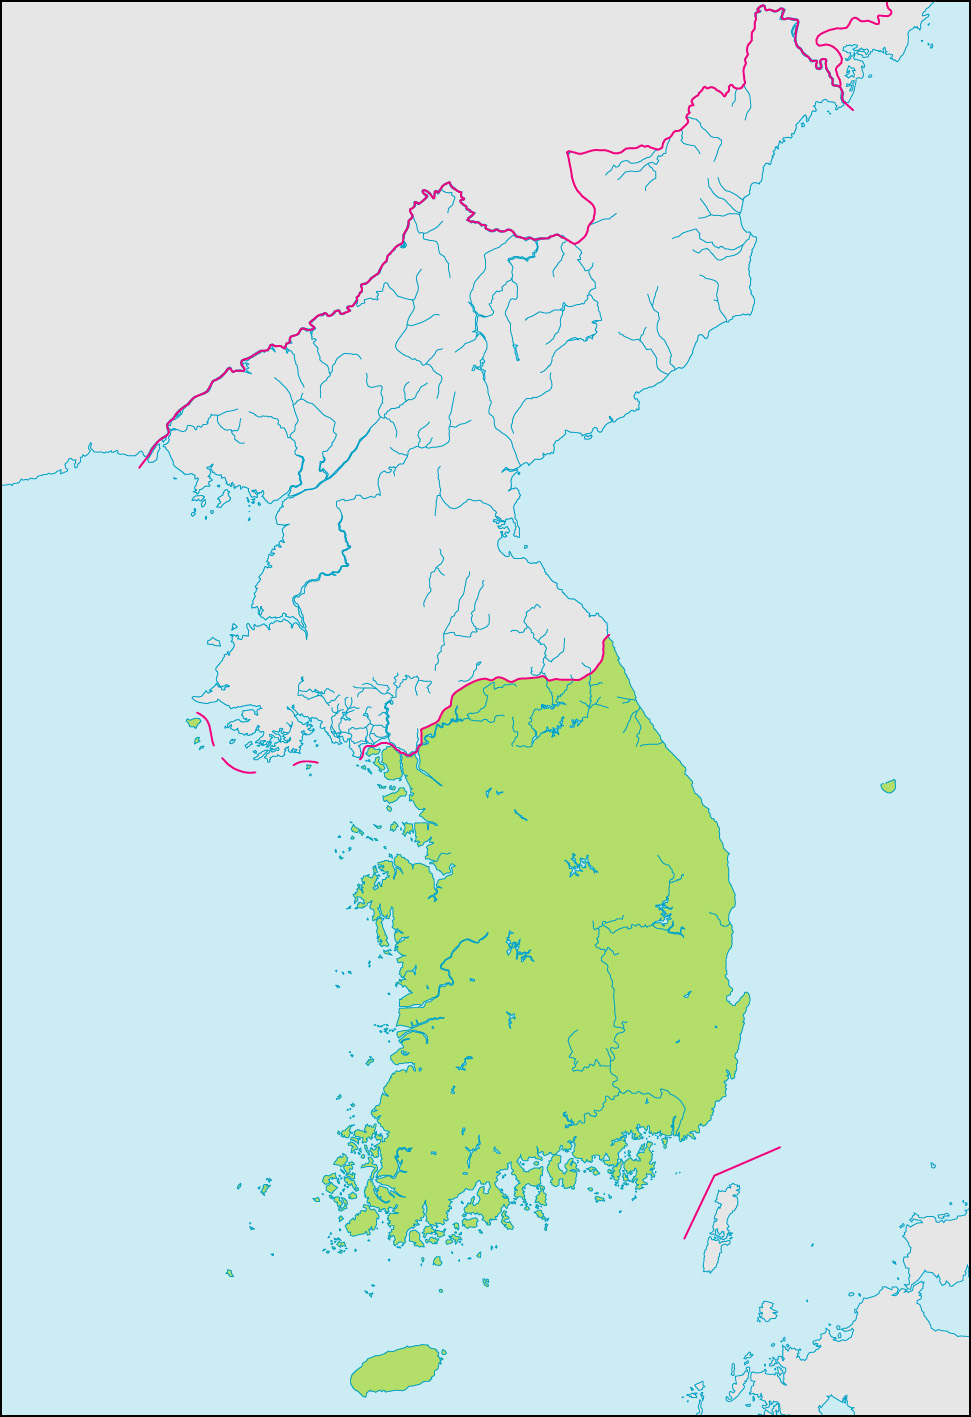 韓国地図(国境記載)の画像